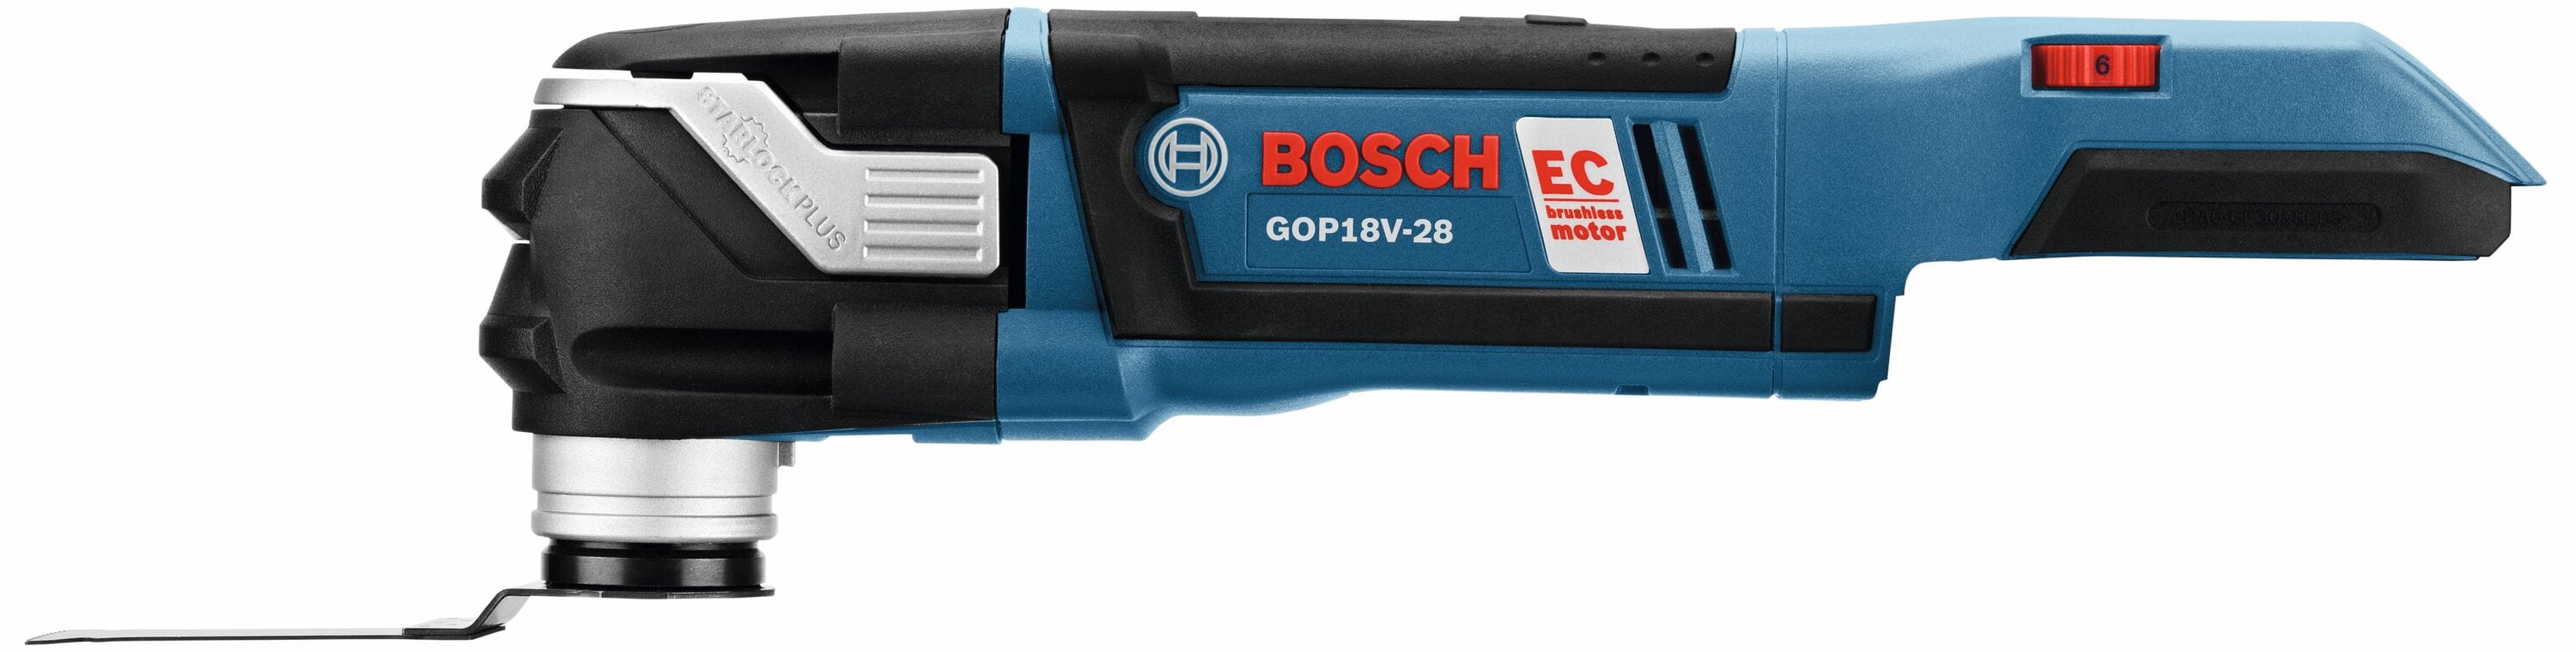 BOSCH GOP18V-28N12 18V BRUSHLESS STARLOCK PLUS OSCILLATING Multi-Tool KIT  for sale online